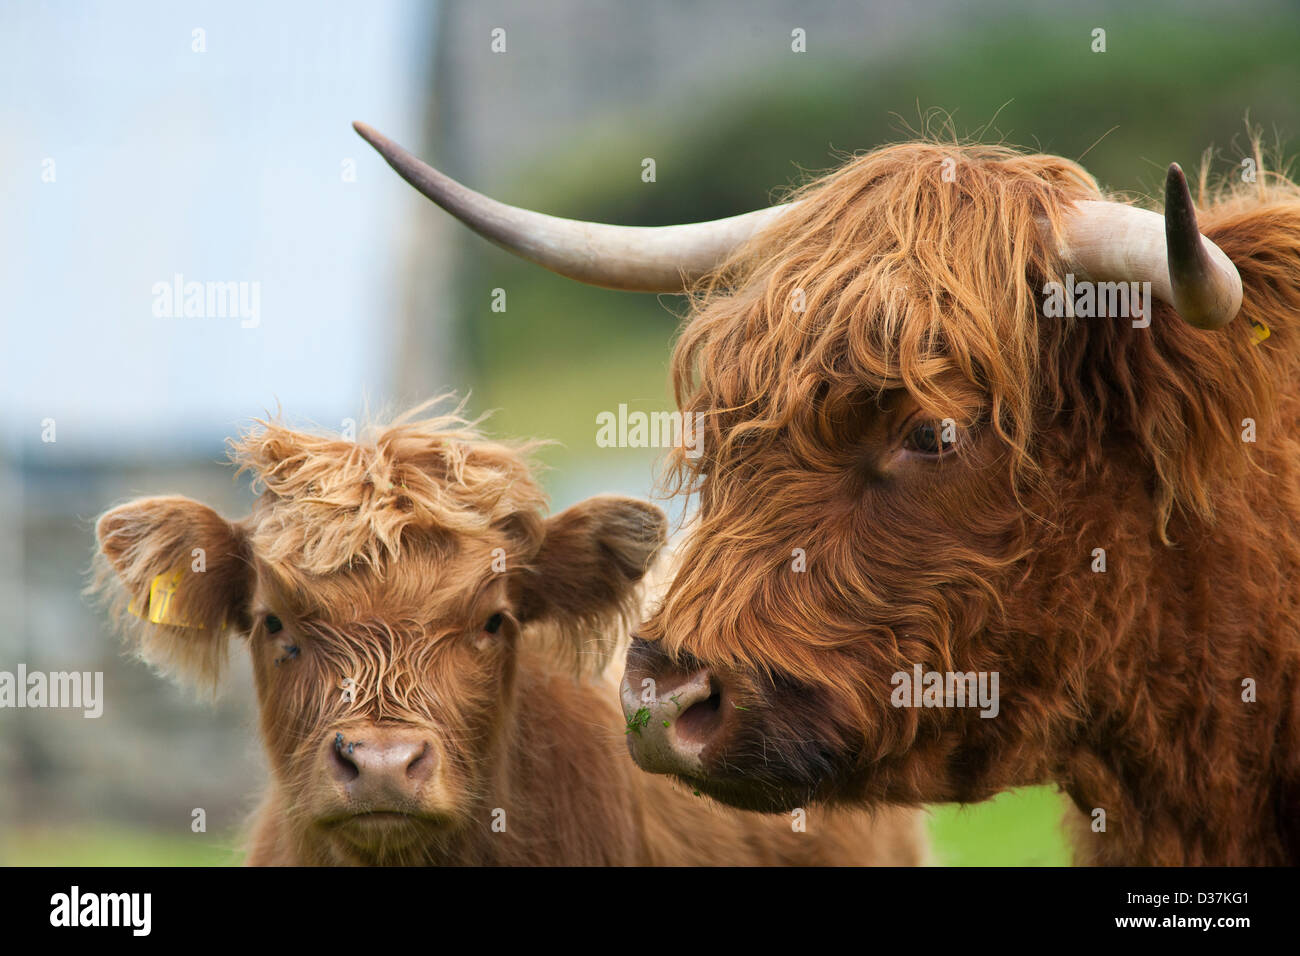 Deux vaches Highland cattle, ou un adulte et un veau ou Kyloe dans un champ dans les Highlands écossais Banque D'Images